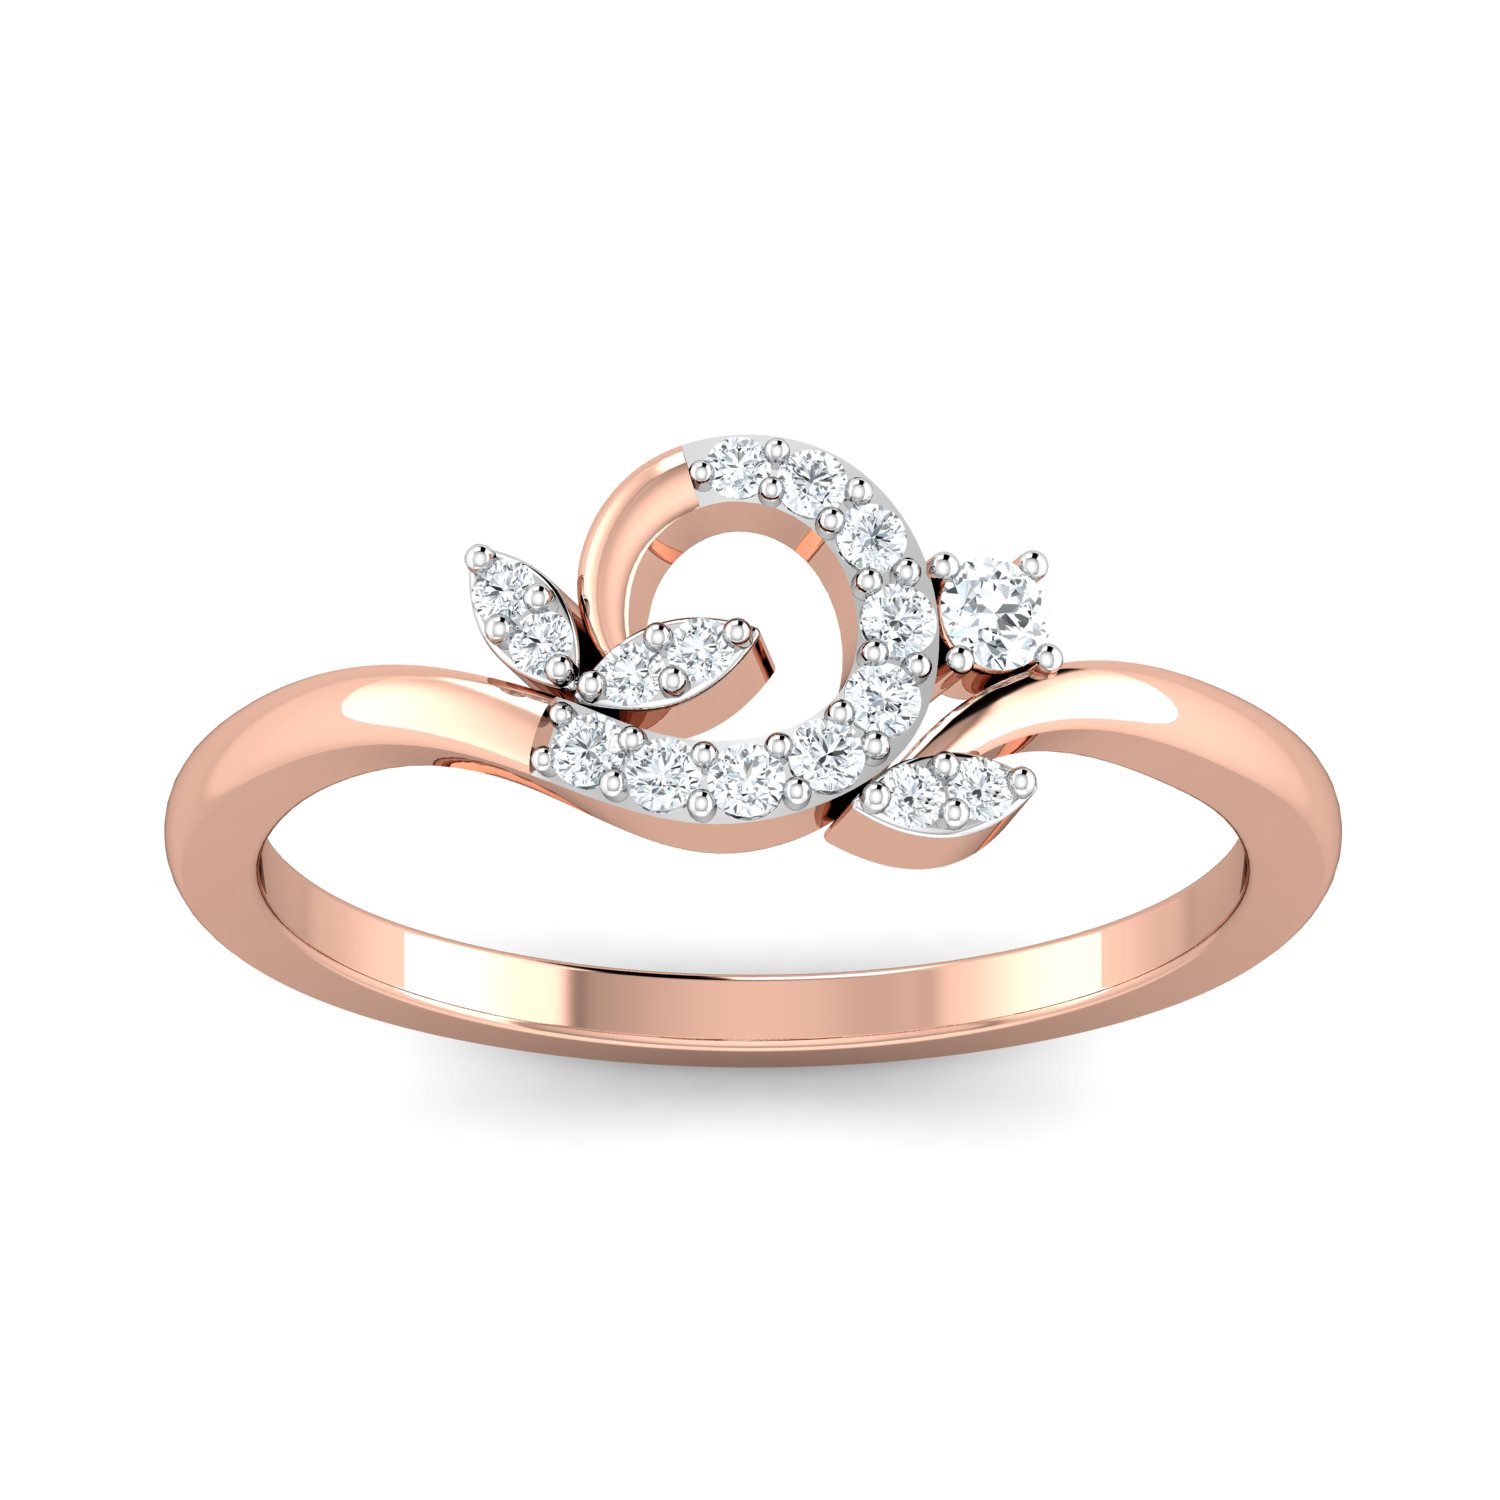 OFFSPRING Ring in 18-karat gold and diamonds.